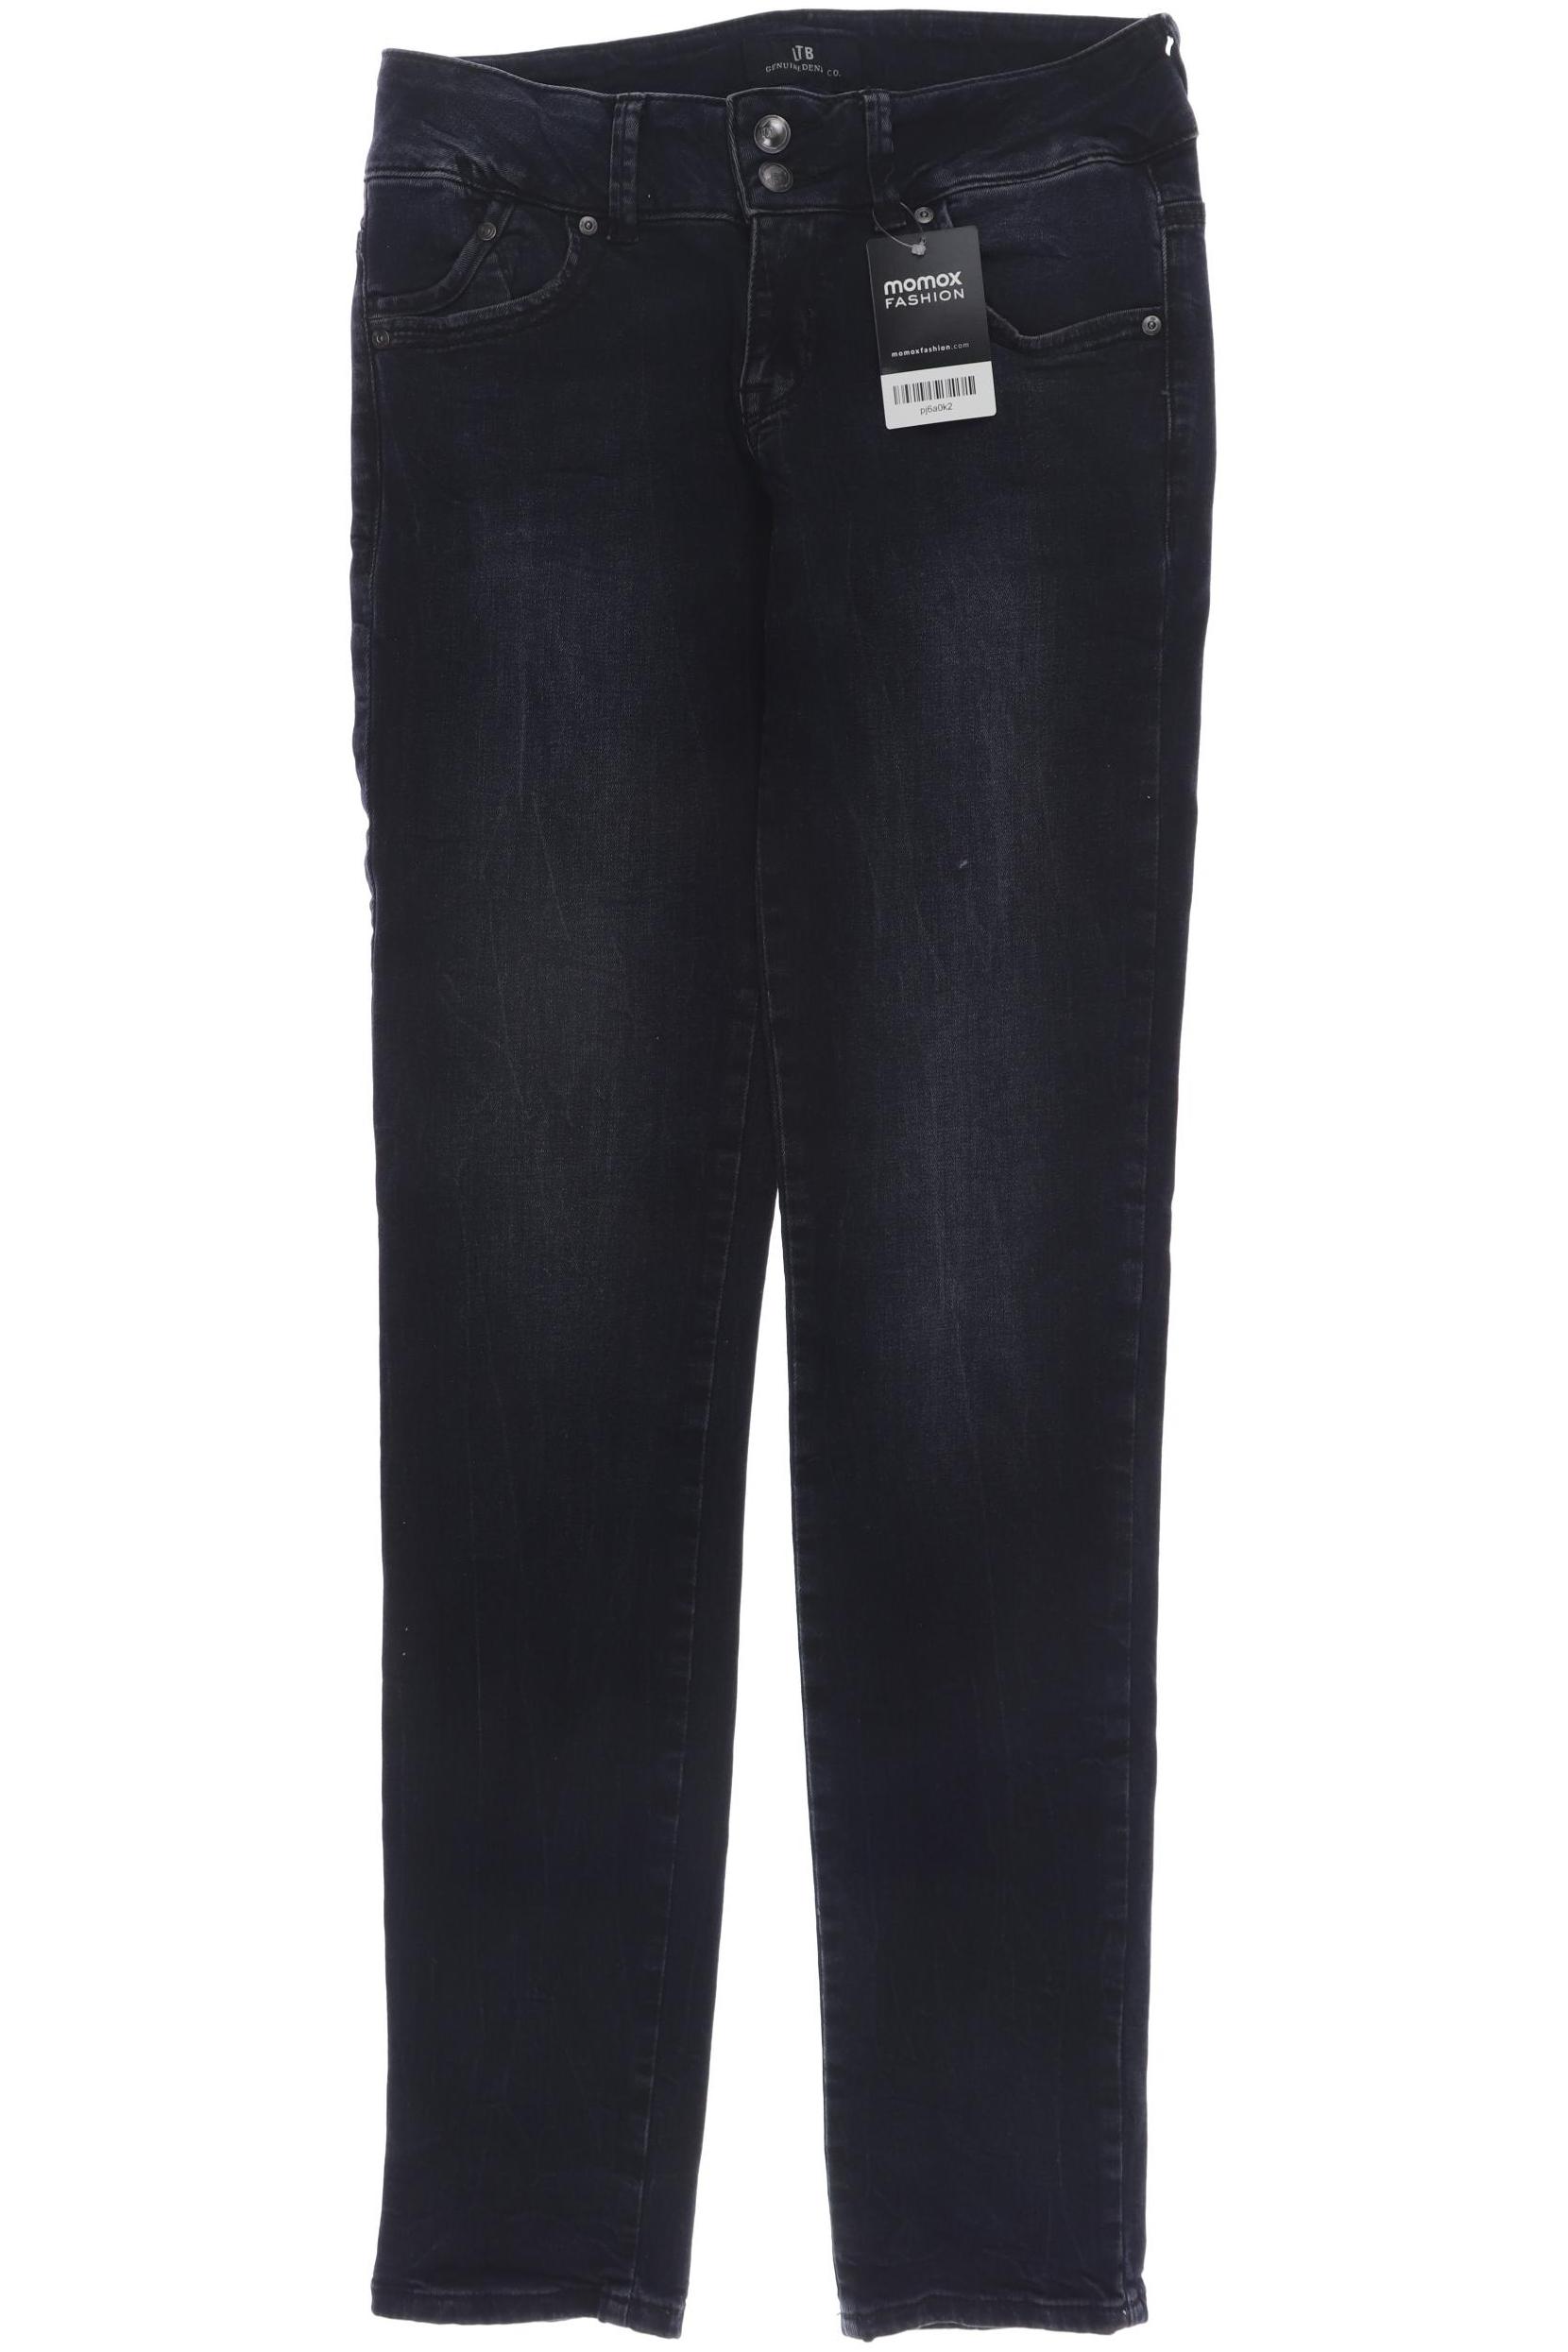 LTB Damen Jeans, marineblau, Gr. 40 von LTB